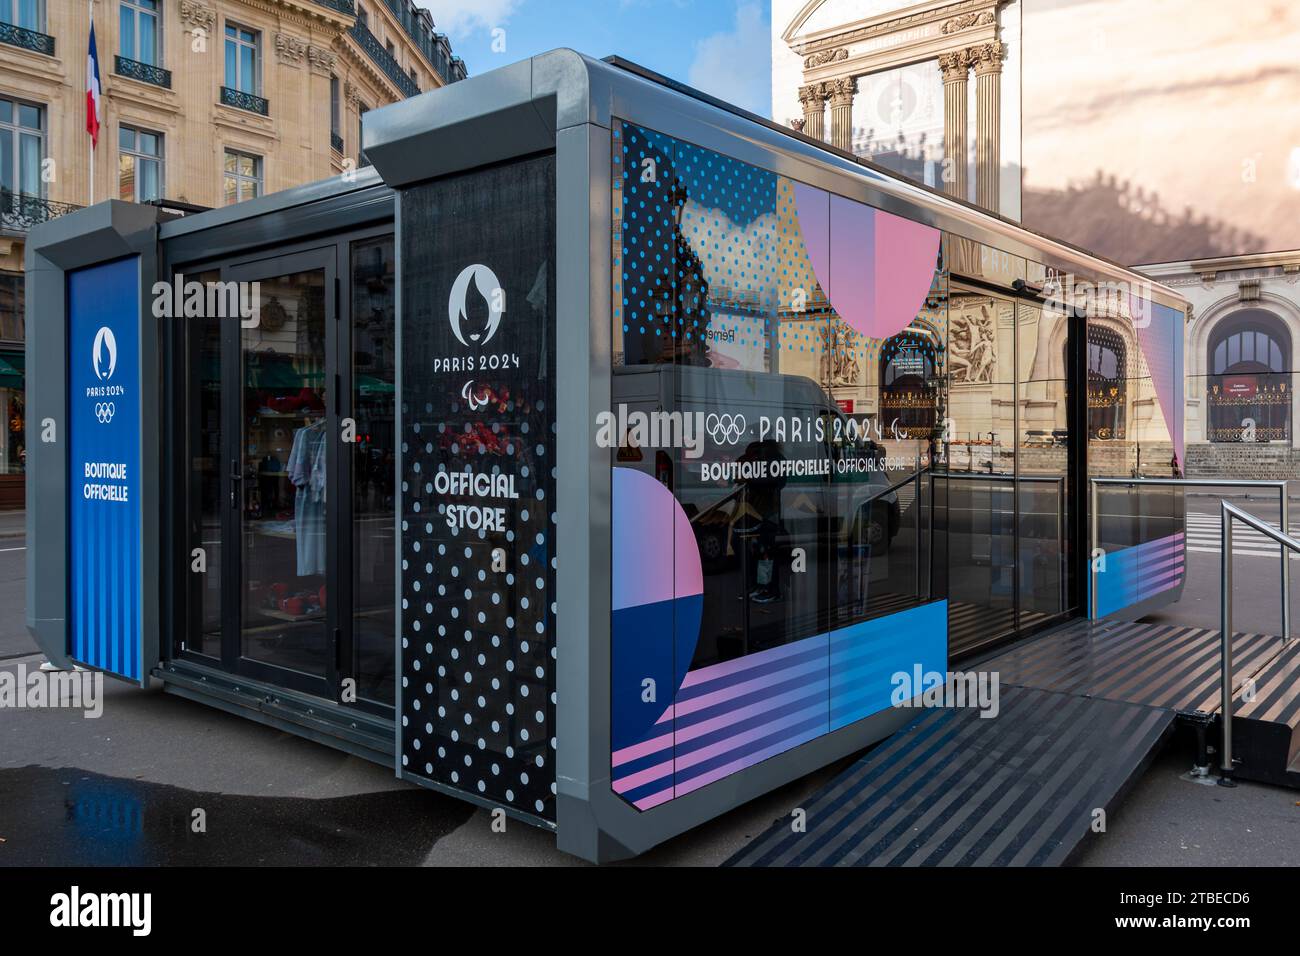 Vue extérieure du magasin officiel des Jeux Olympiques et Paralympiques d'été de Paris 2024 situé place de l'Opéra à Paris, France Banque D'Images